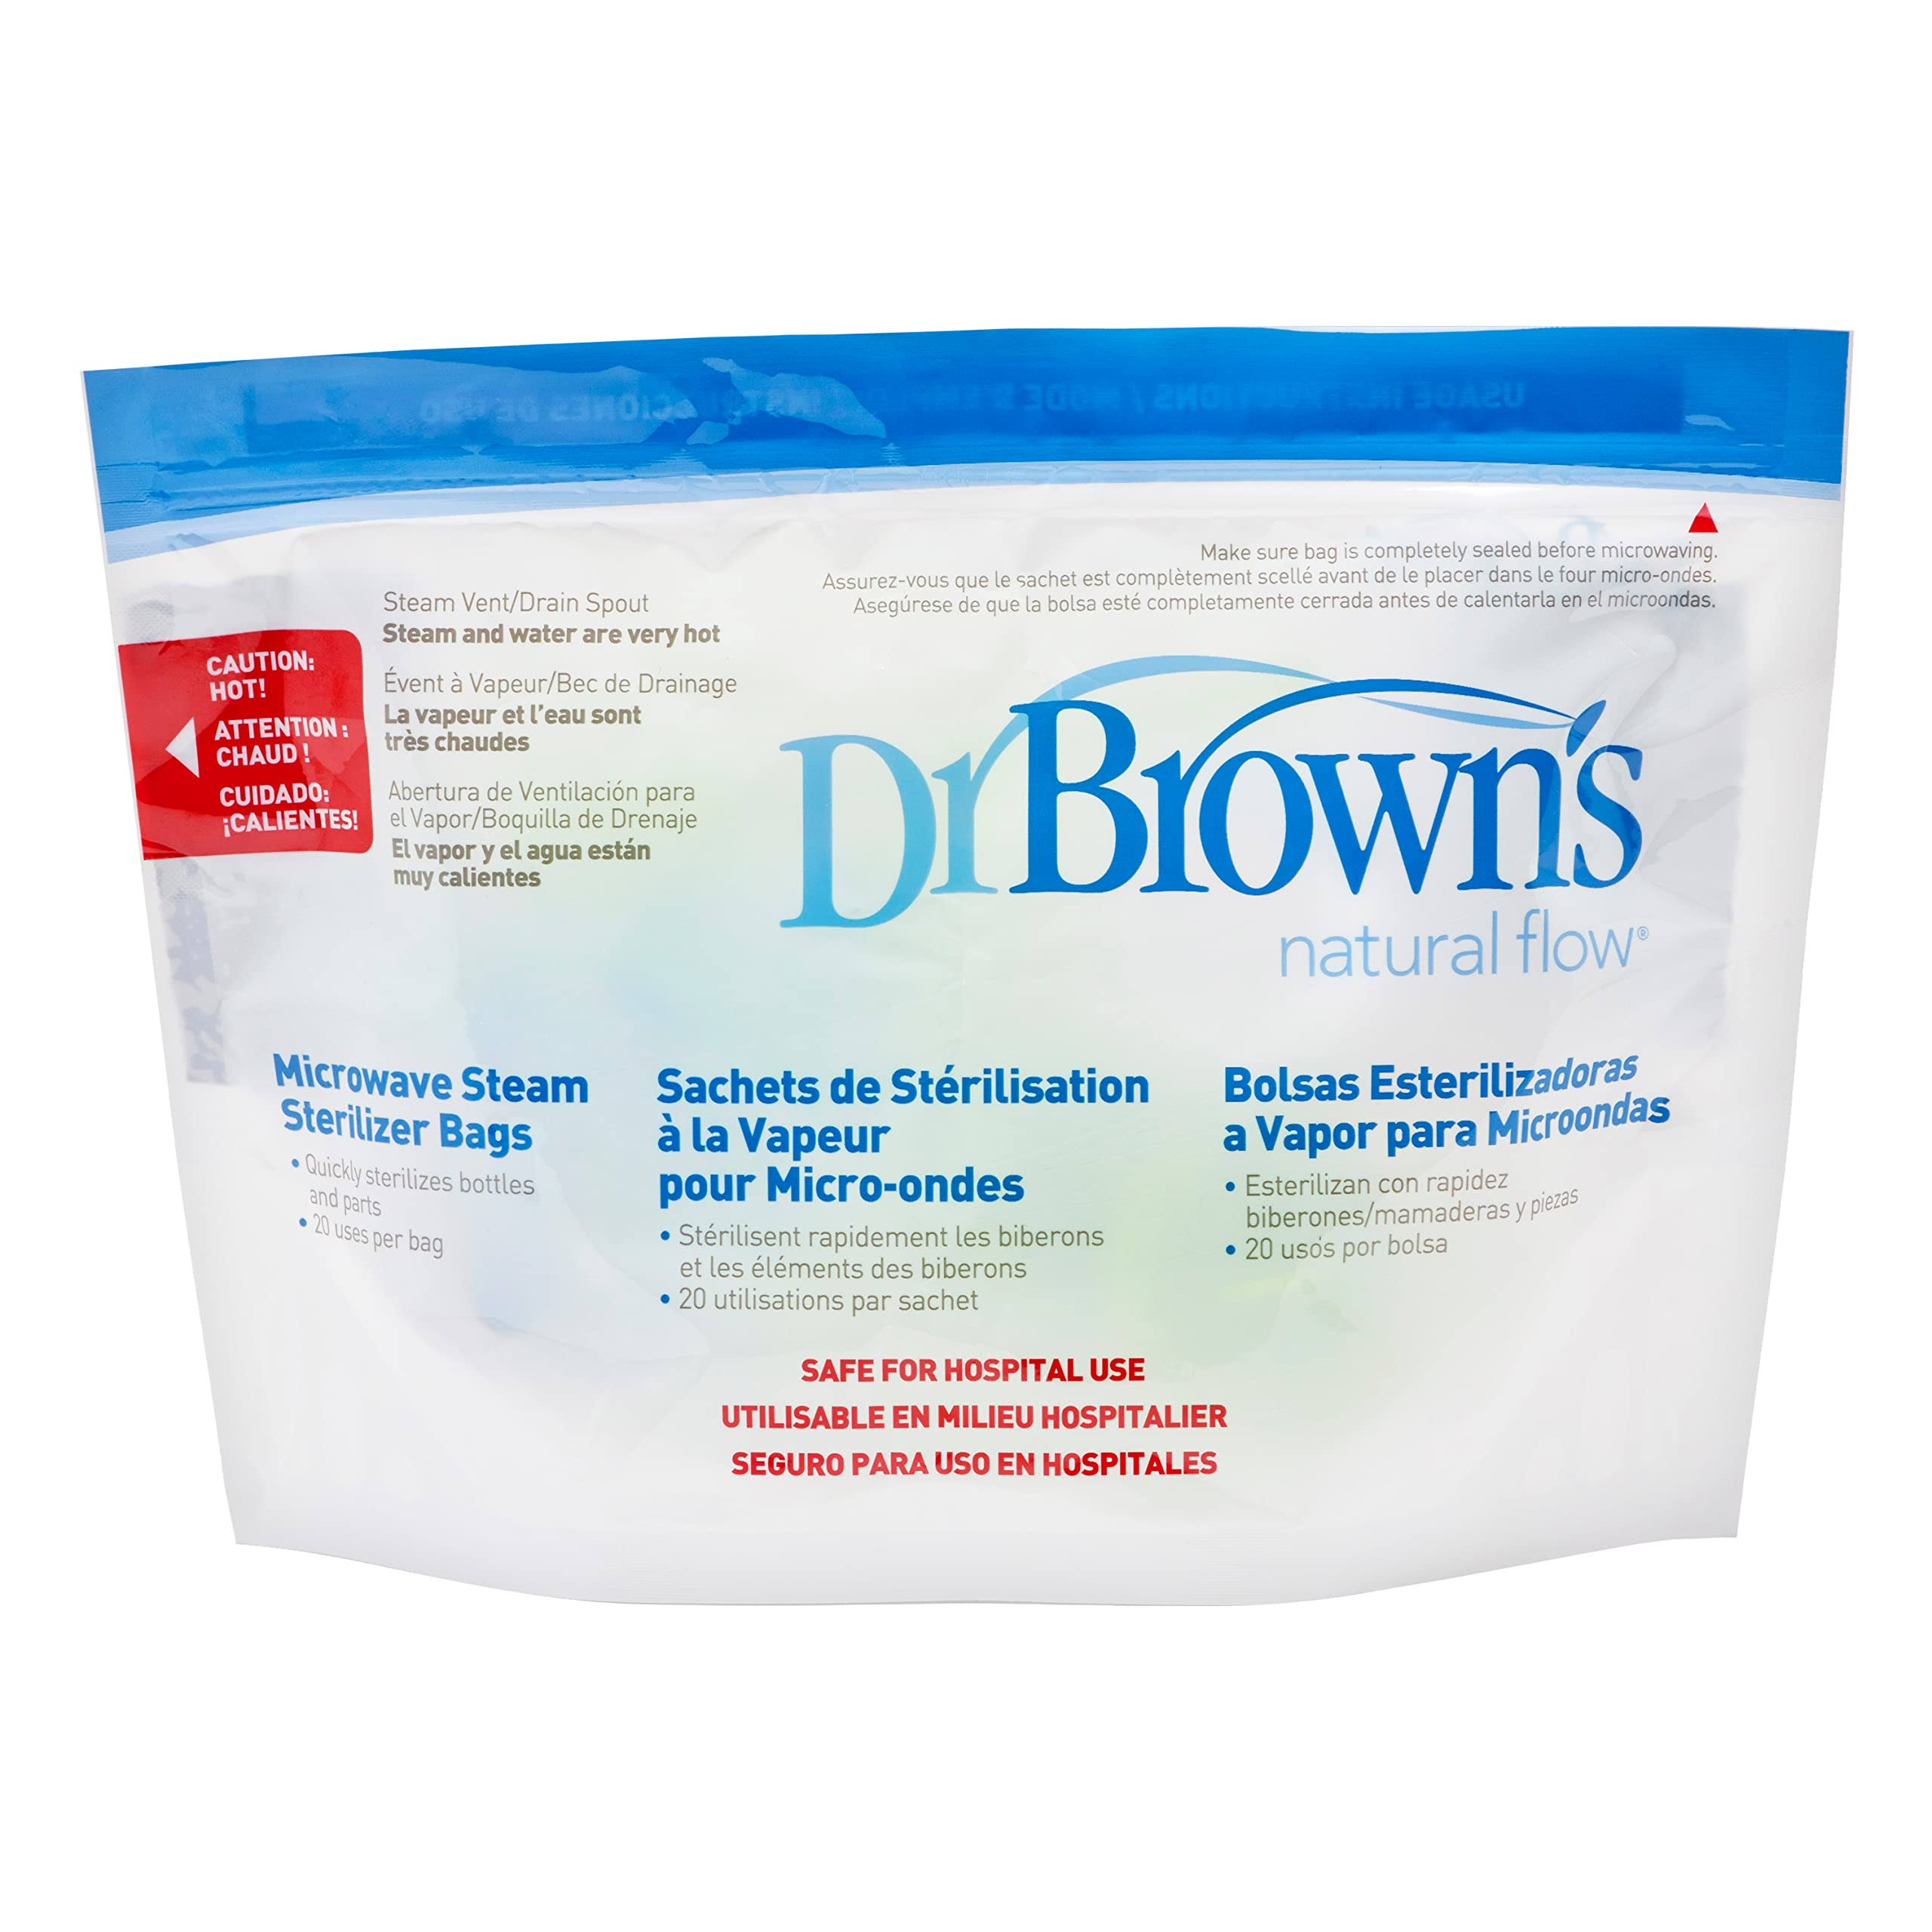 Dr Brown's Natural Flow Microwave Steam Sterilizer Bags - 5pcs